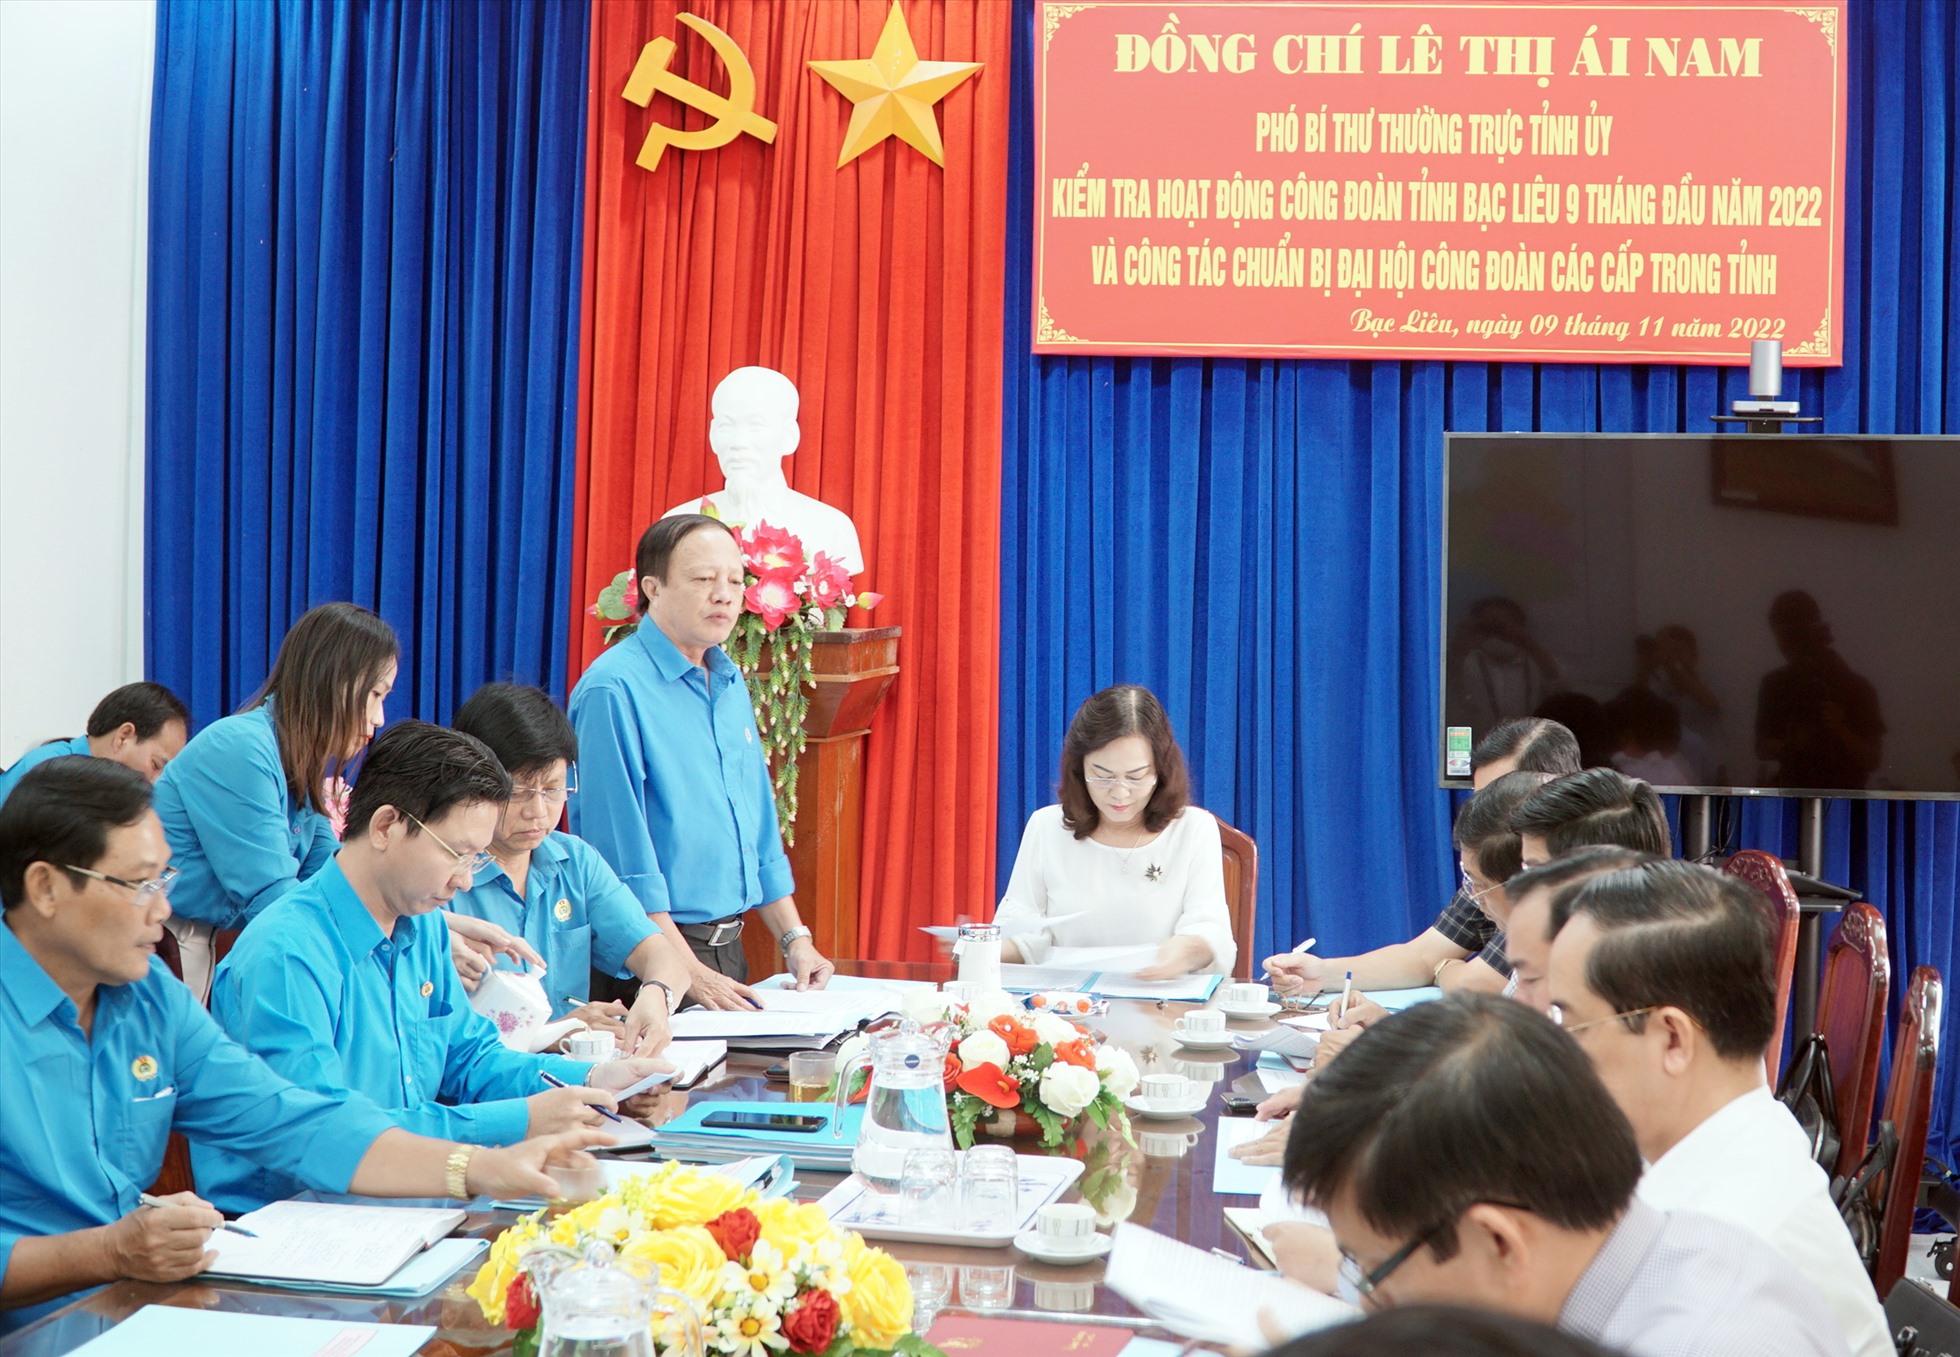 Tổ chức công đoàn tỉnh Bạc Liêu luôn đồng hành cùng công nhân viên chức lao động trong việc bảo vệ quyền lợi ích hợp pháp chính đáng cho người lao động. Ảnh: Nhật Hồ